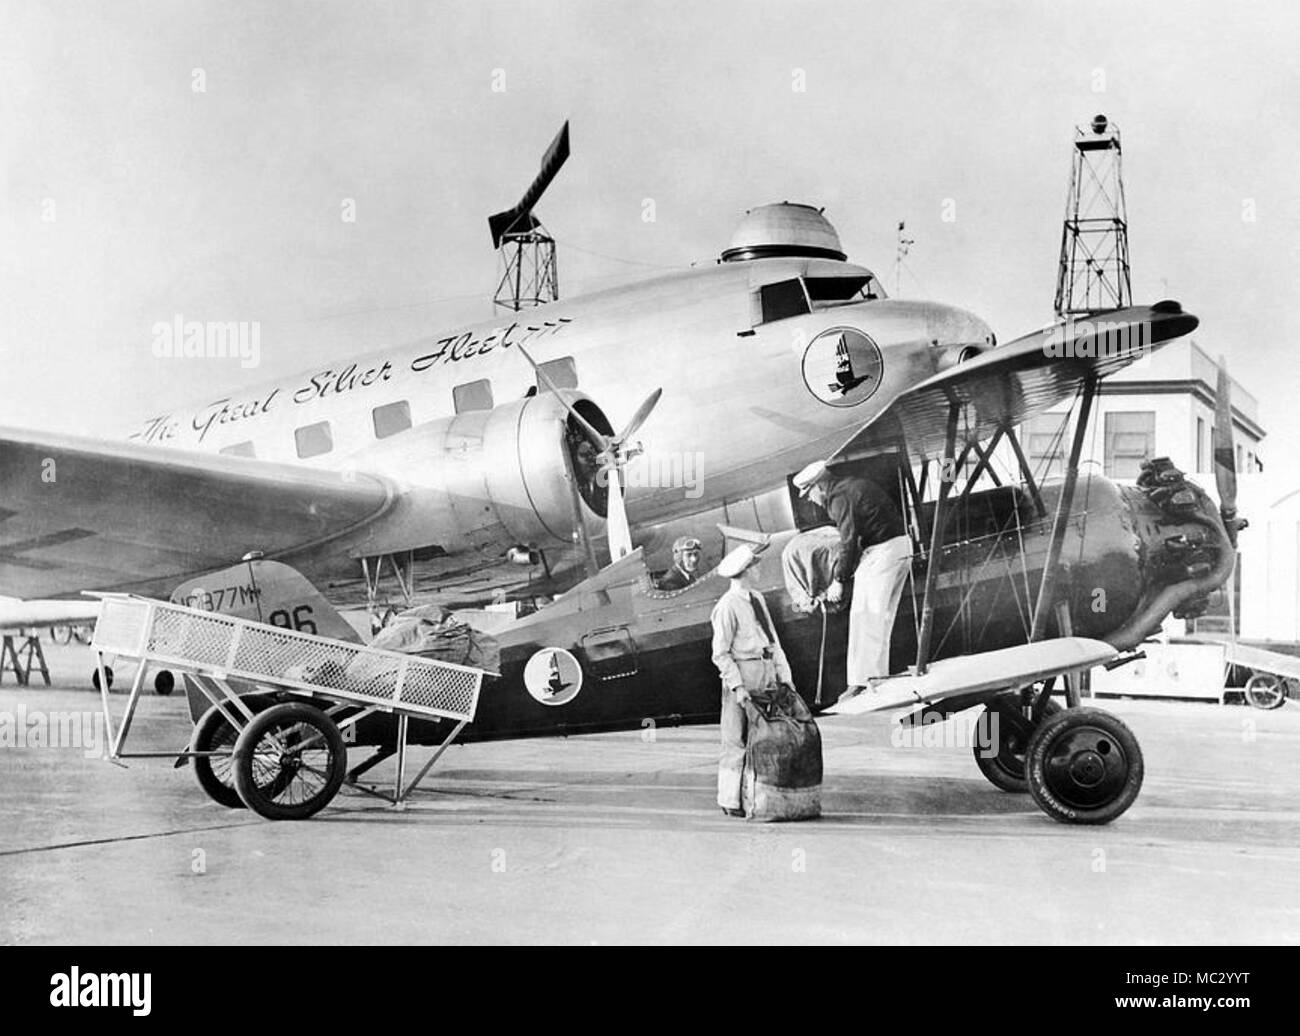 Le courrier aérien effectué en deux de la grande flotte d'avions d'argent en Amérique 1935. Société est devenue Eastern Airlines dans les années ultérieures. Banque D'Images